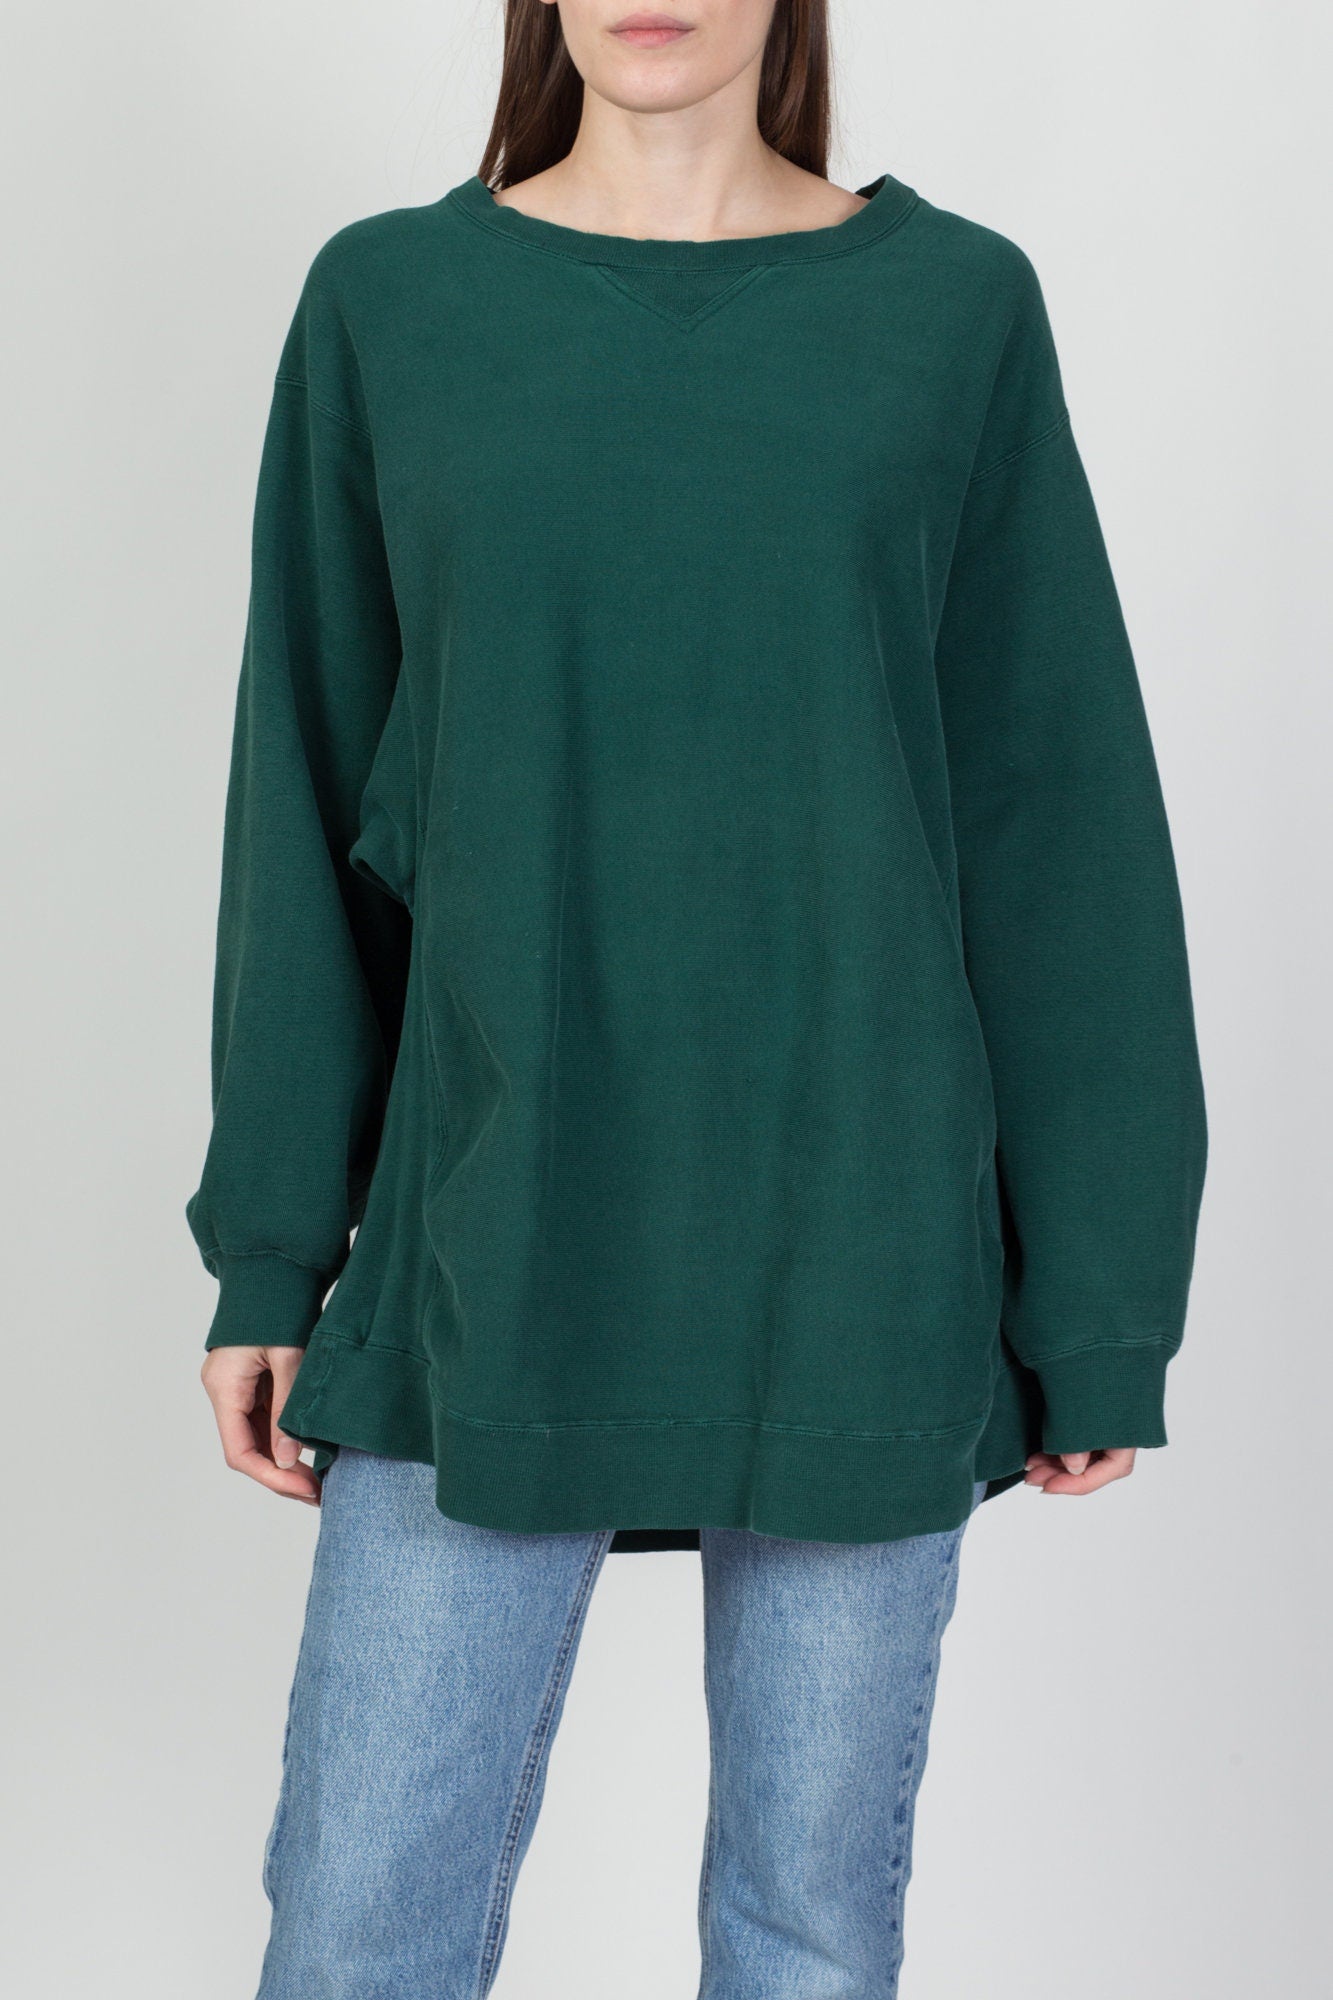 90s Green Distressed Oversize Sweatshirt - Men's XL, Women's XXL 